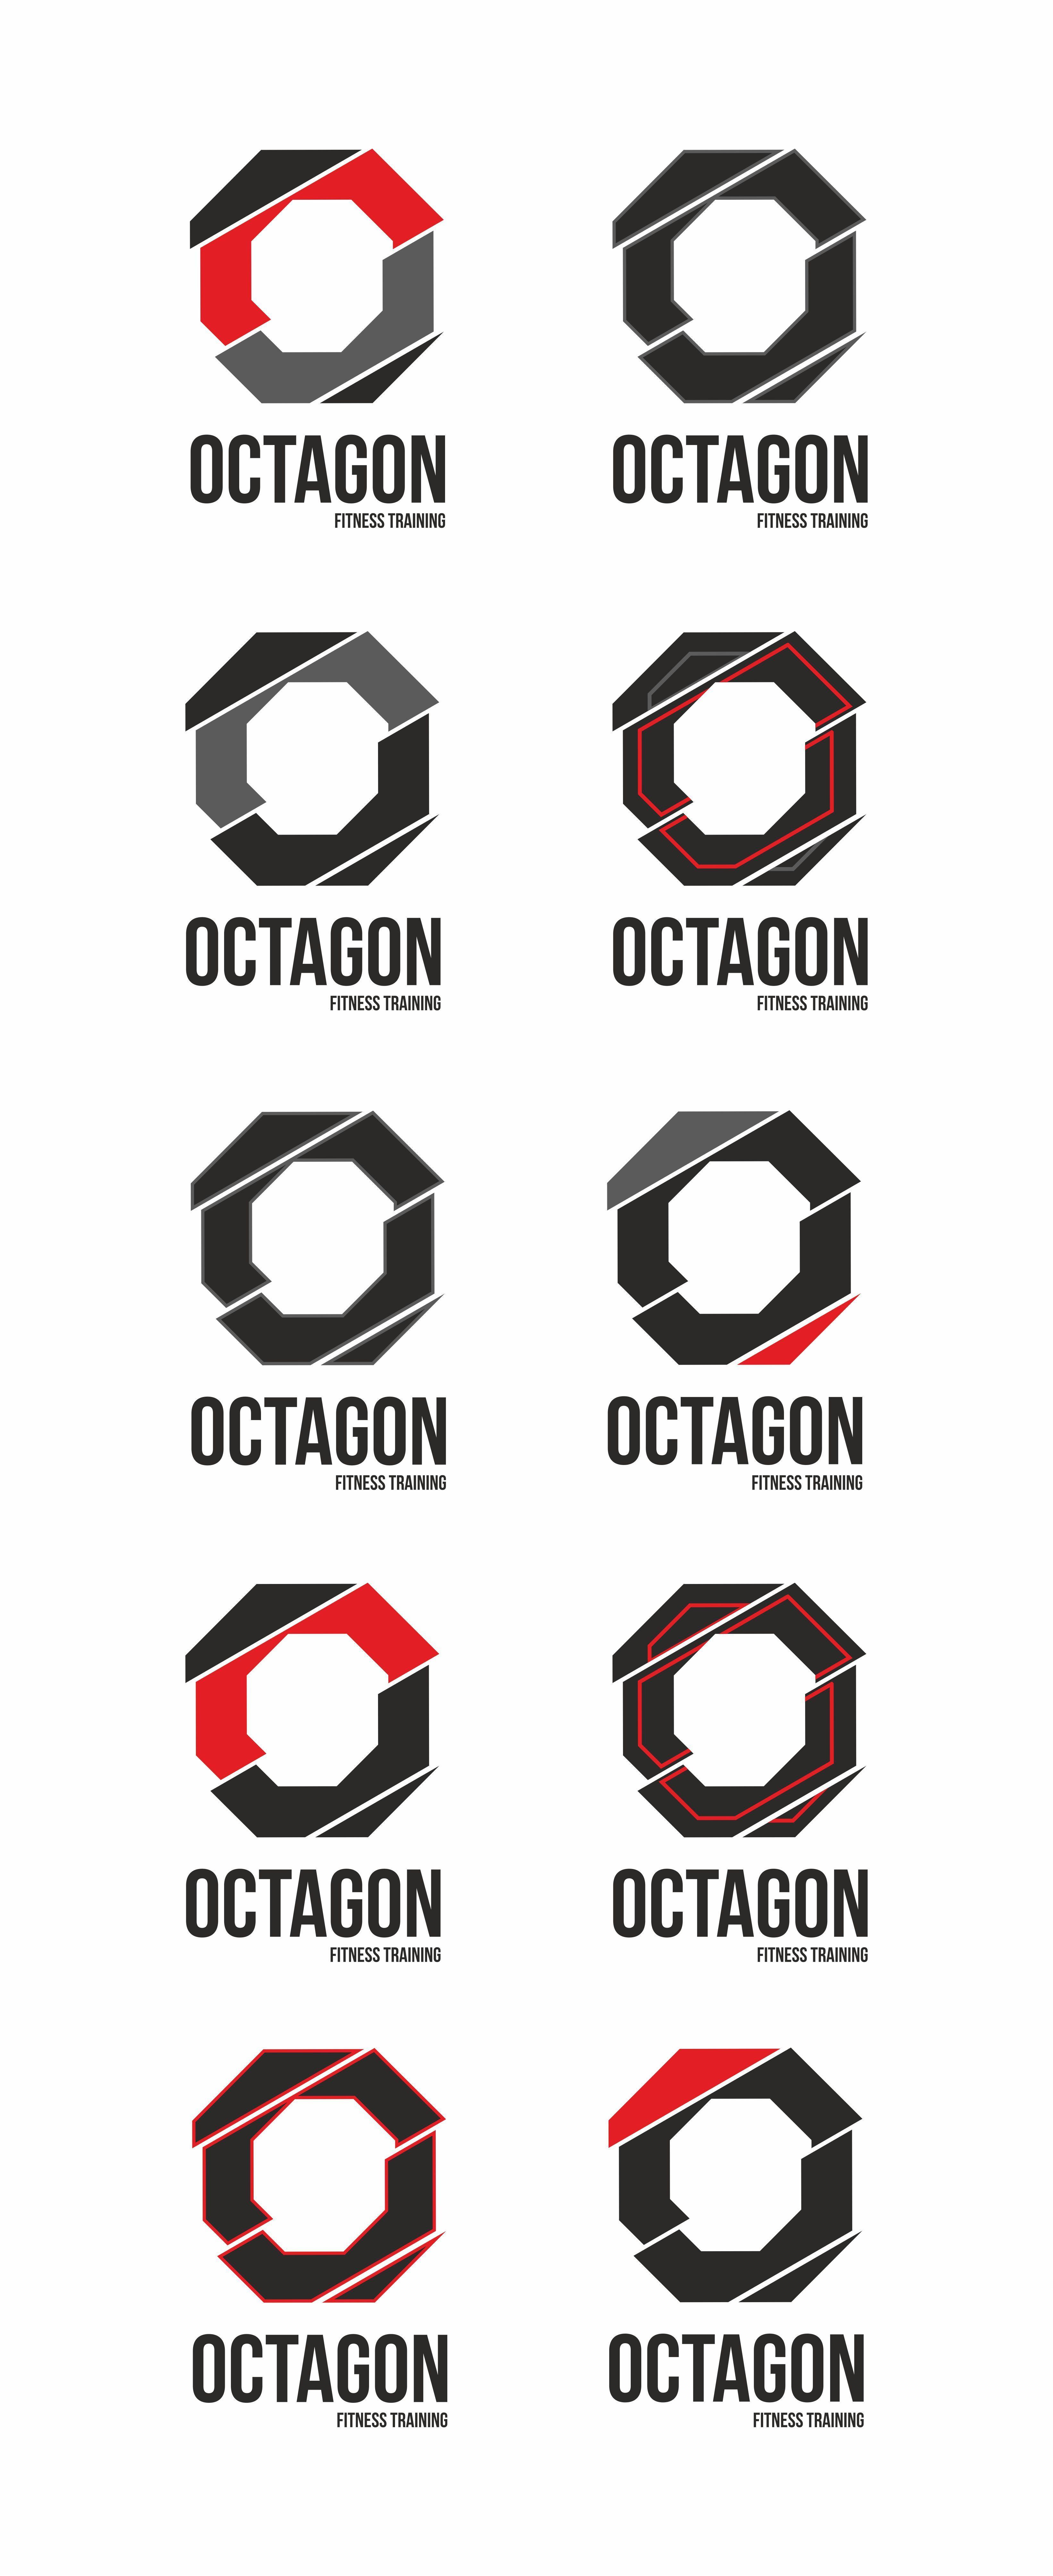 Octagon Company Logo - Desarrollo de Octagon #logo #branding #design #identity #typo